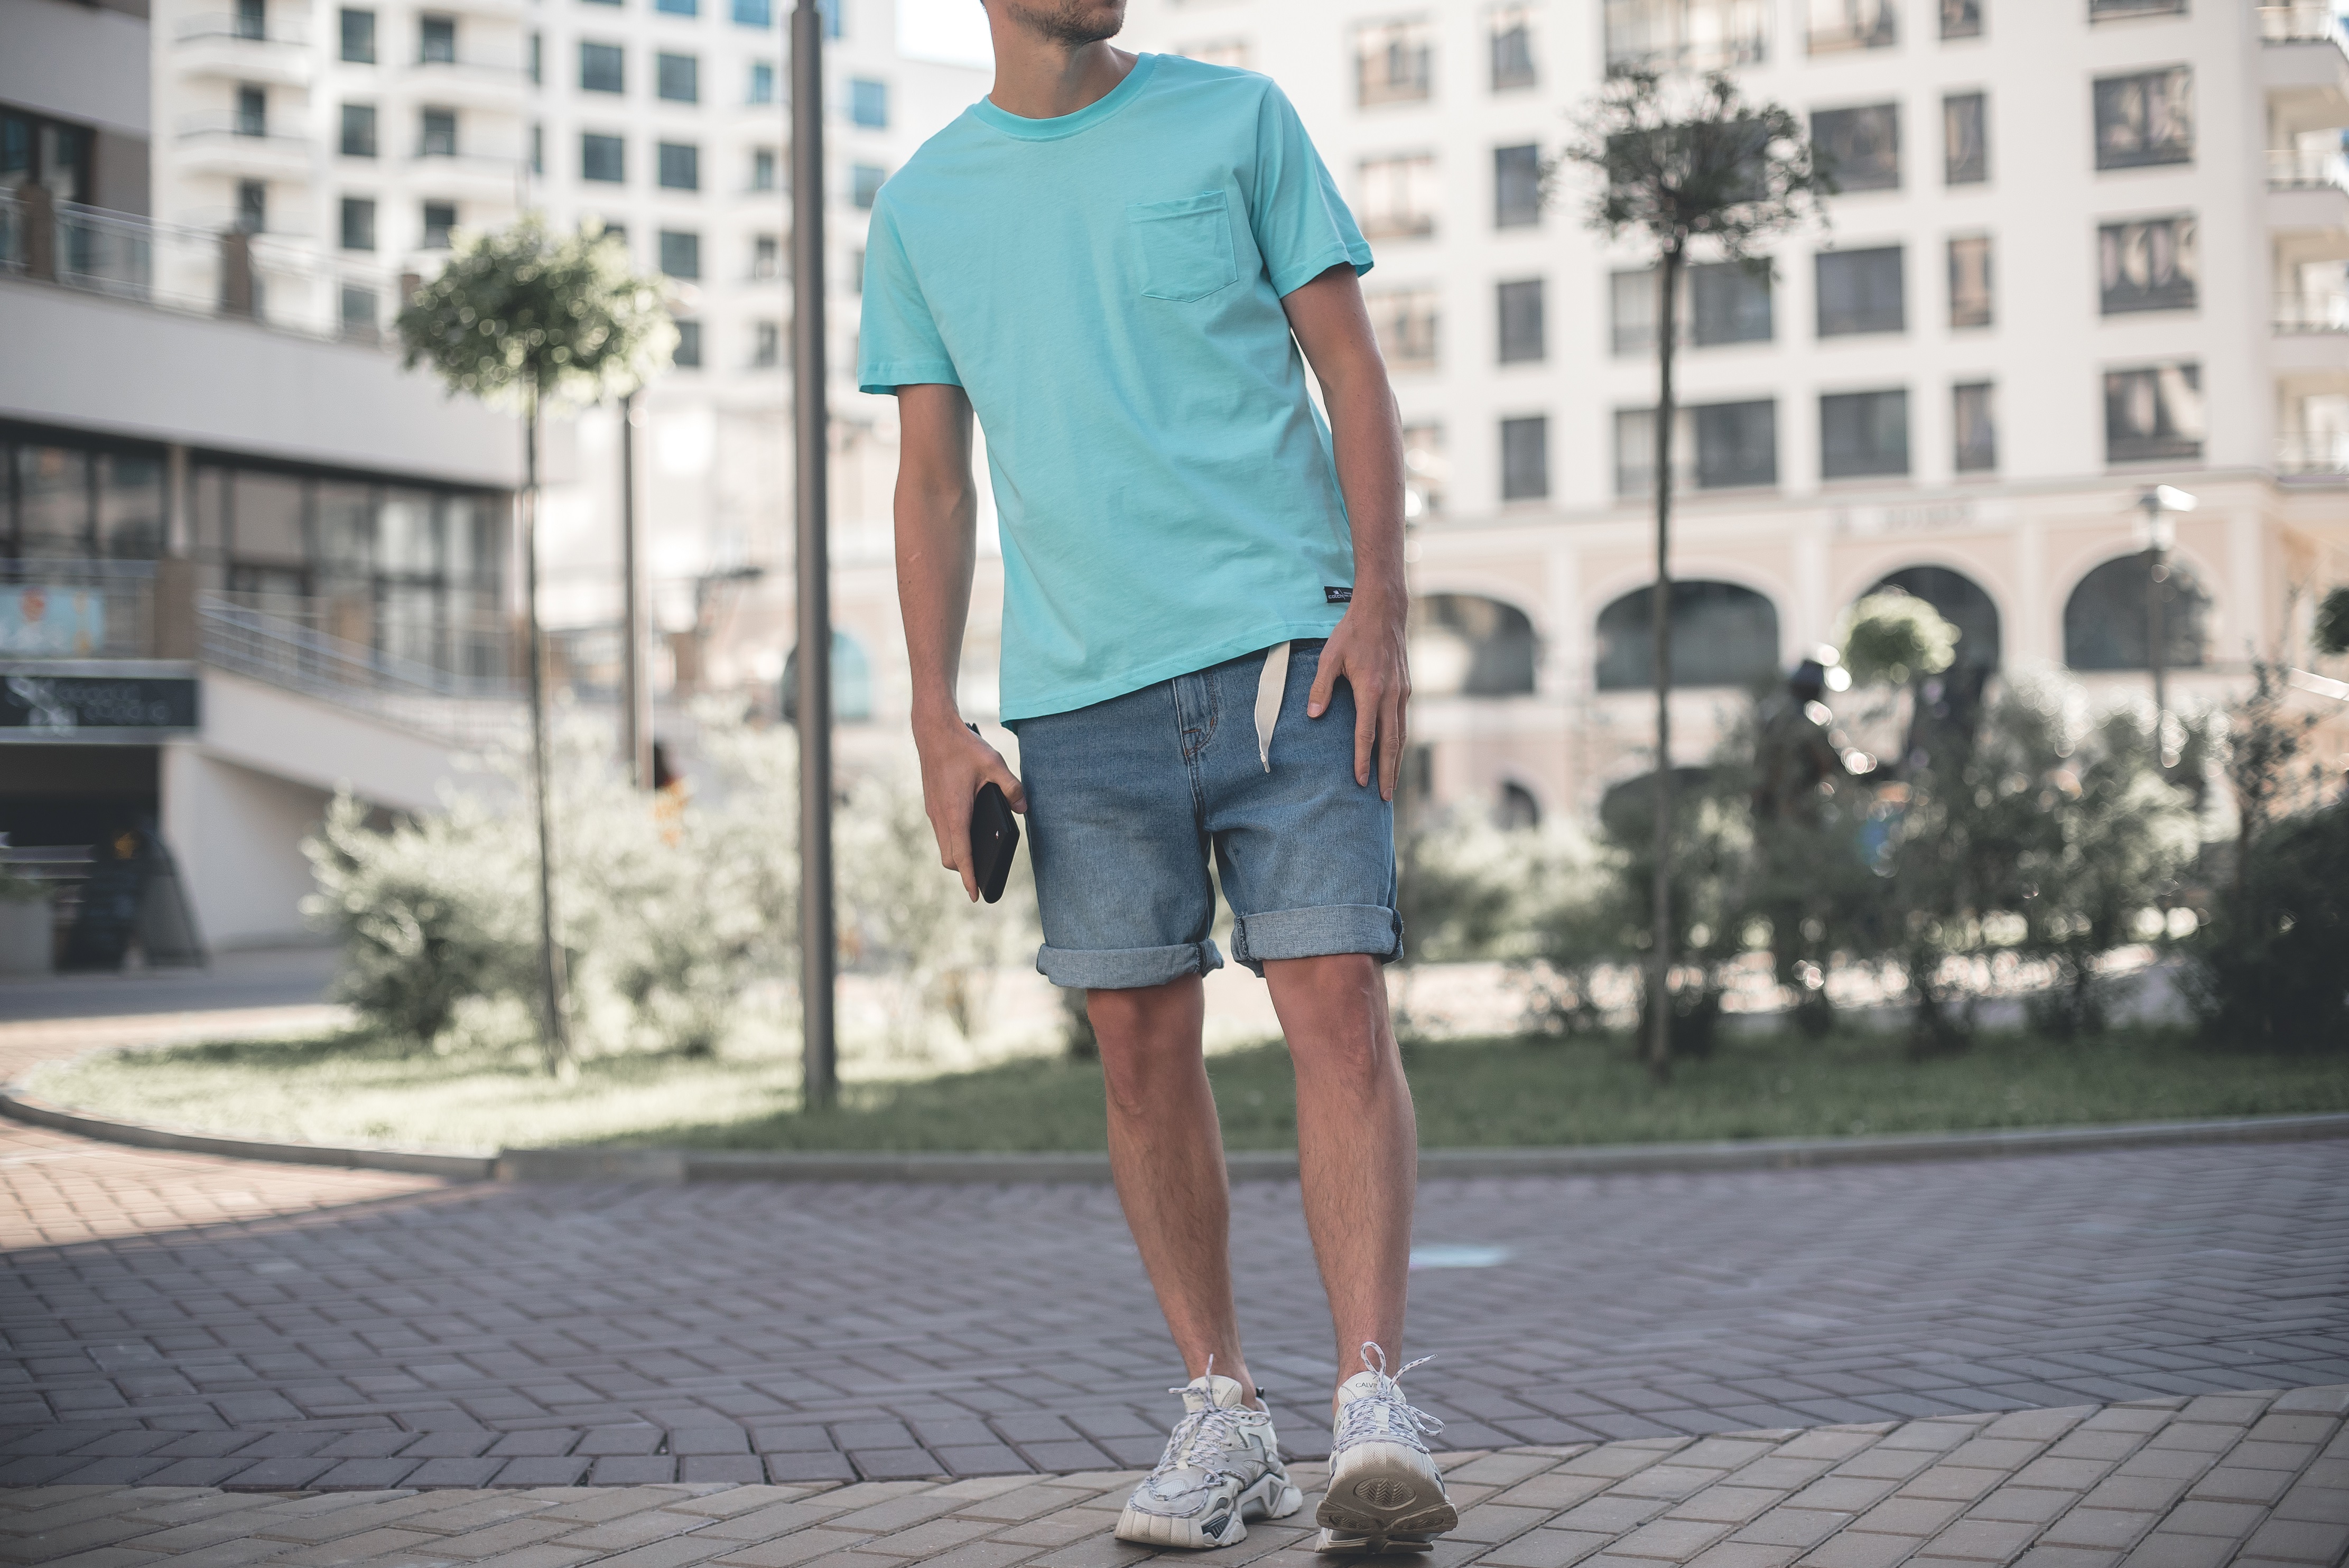 Джинсовые летние мужские шорты в сочетании со свтелой футболкой оверсайз - тренд лета 2020